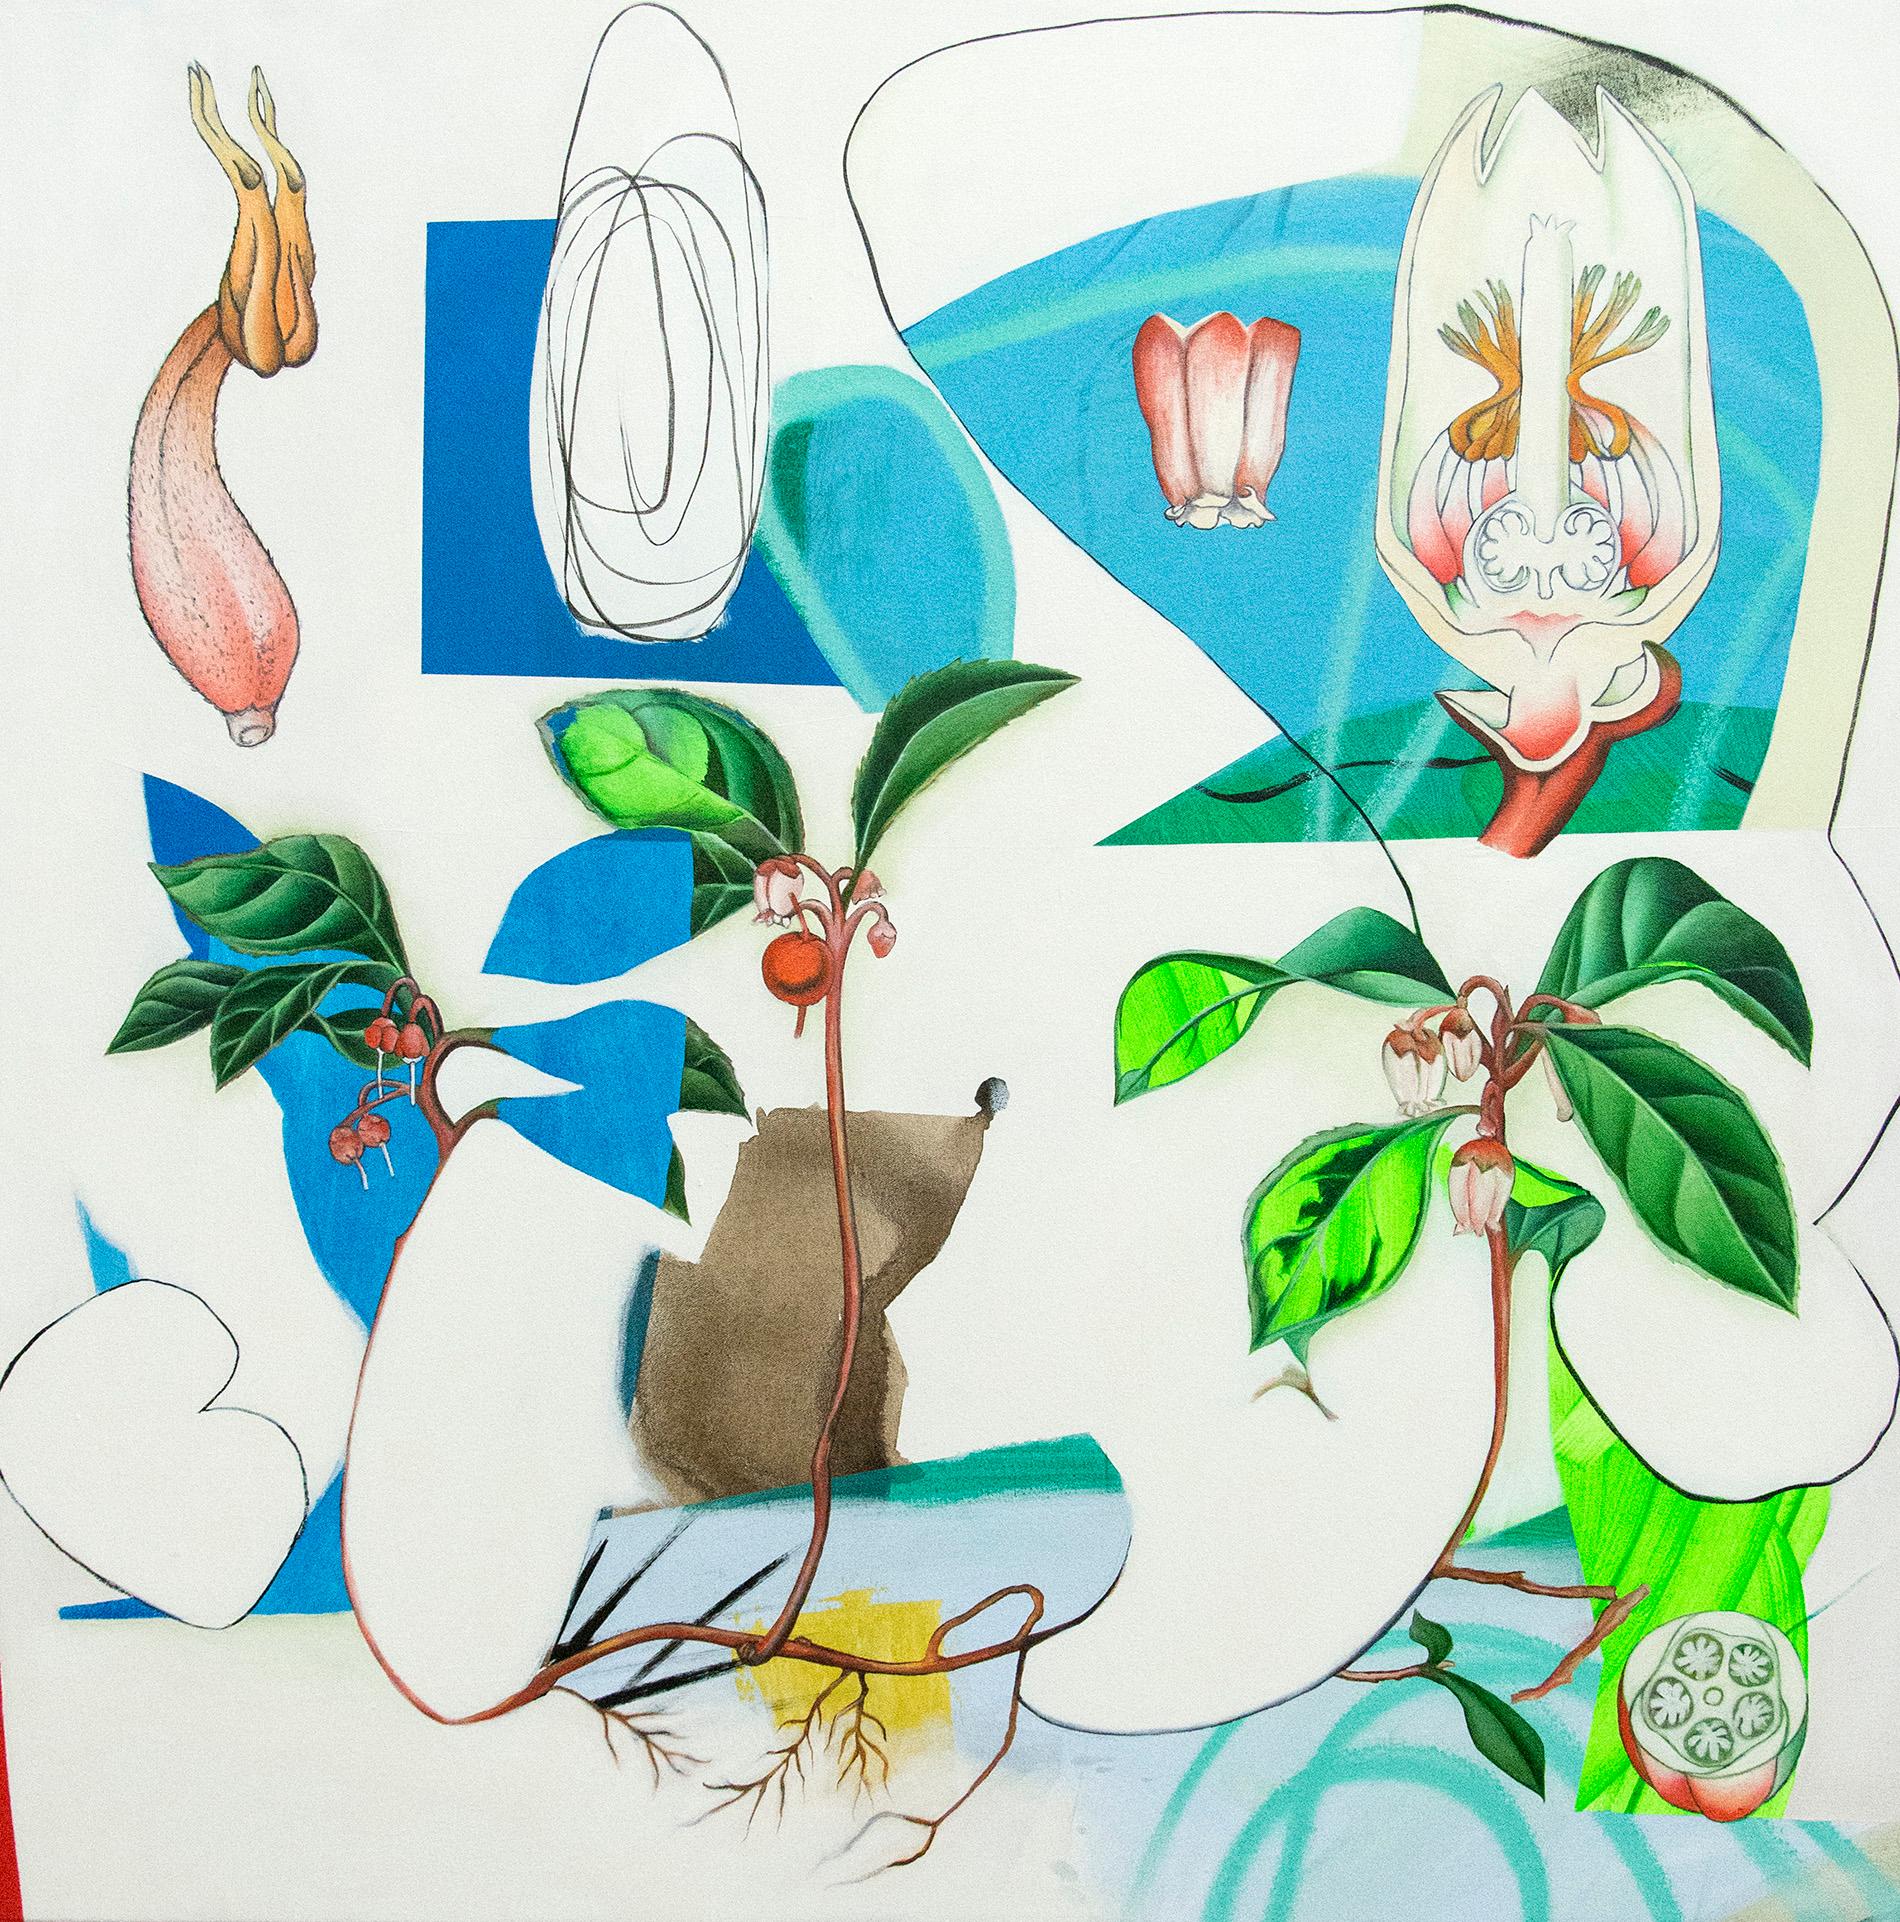 Trientalis – Inspiriert von Erzählungen und botanischen Zeichnungen von Frauen im Naturgewerbe